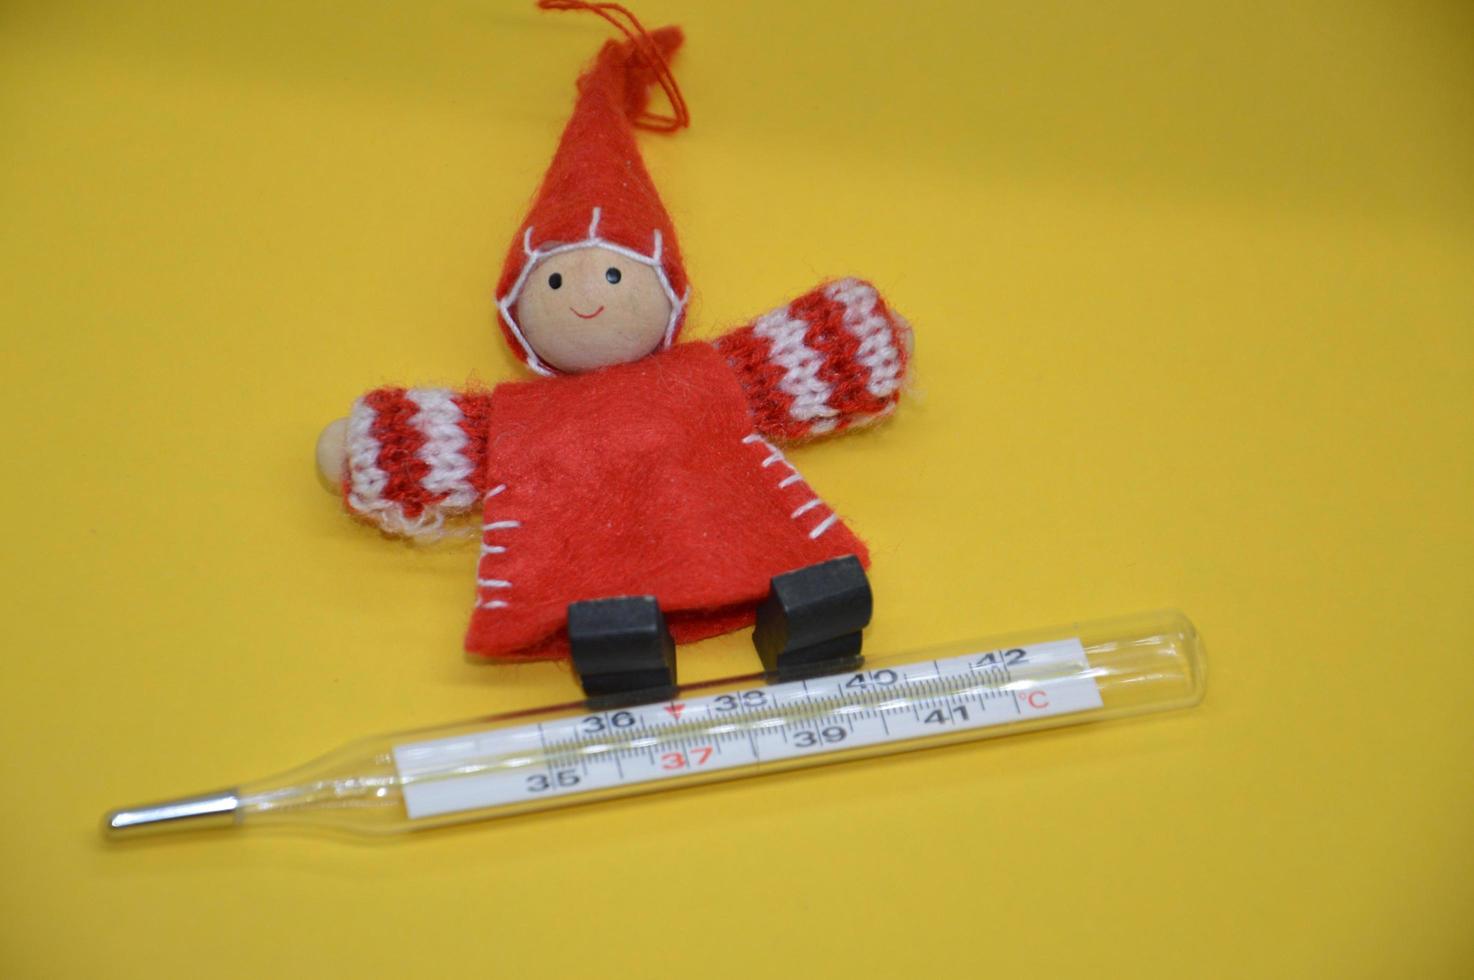 misurazione della temperatura corporea per i bambini con malattia foto